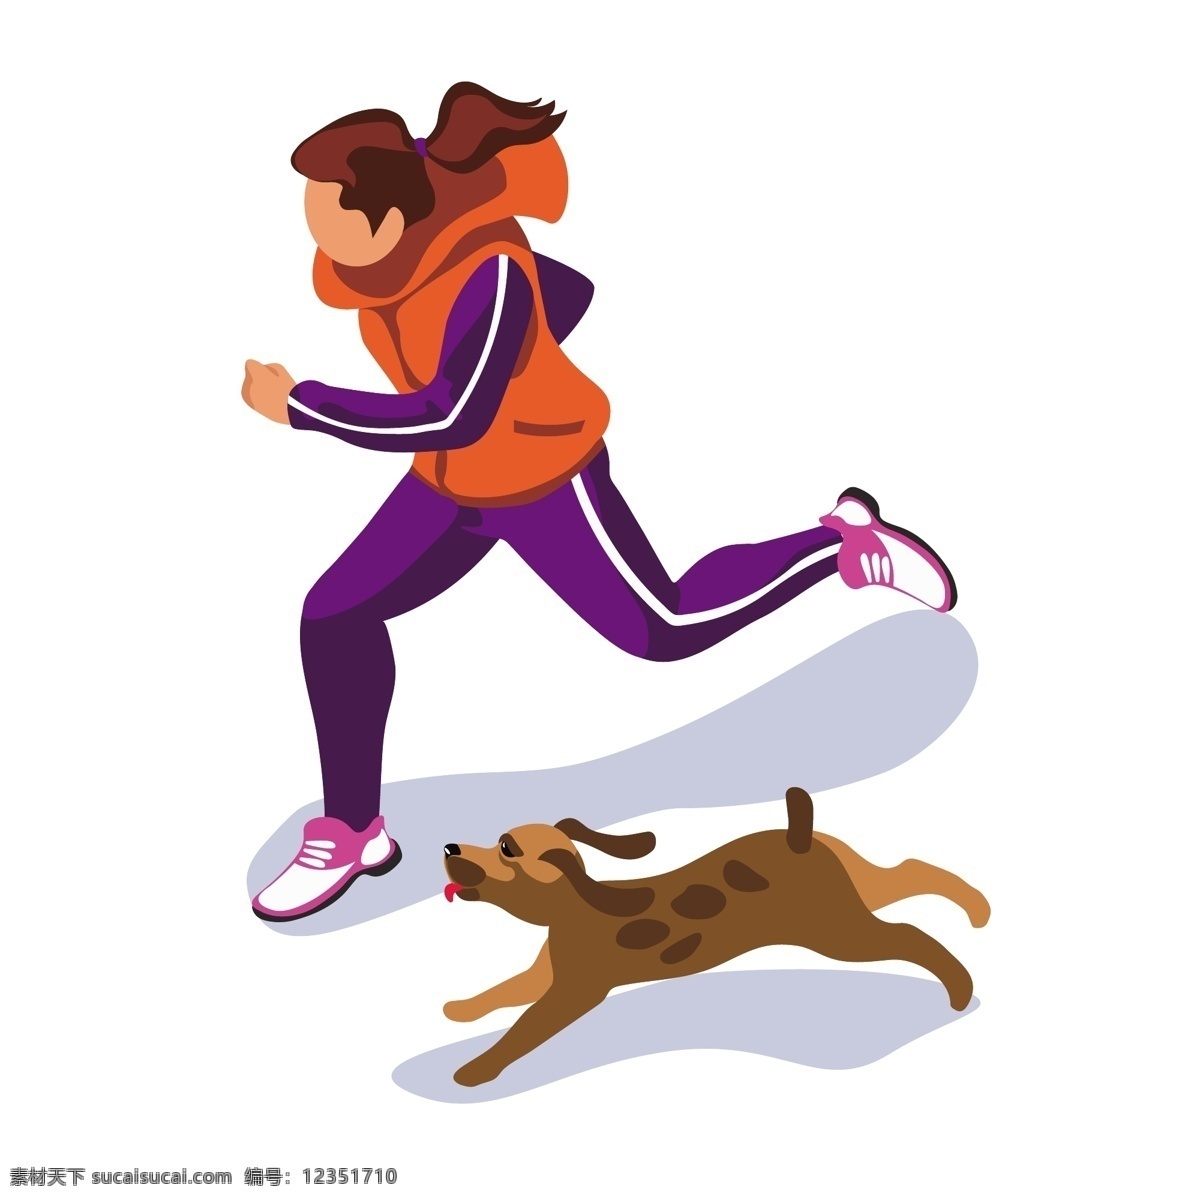 小狗 一起 奔跑 运动员 矢量 卡通 卡通运动员 卡通小狗狗 小狗狗 可爱 可爱小狗 跑步 跑步的运动员